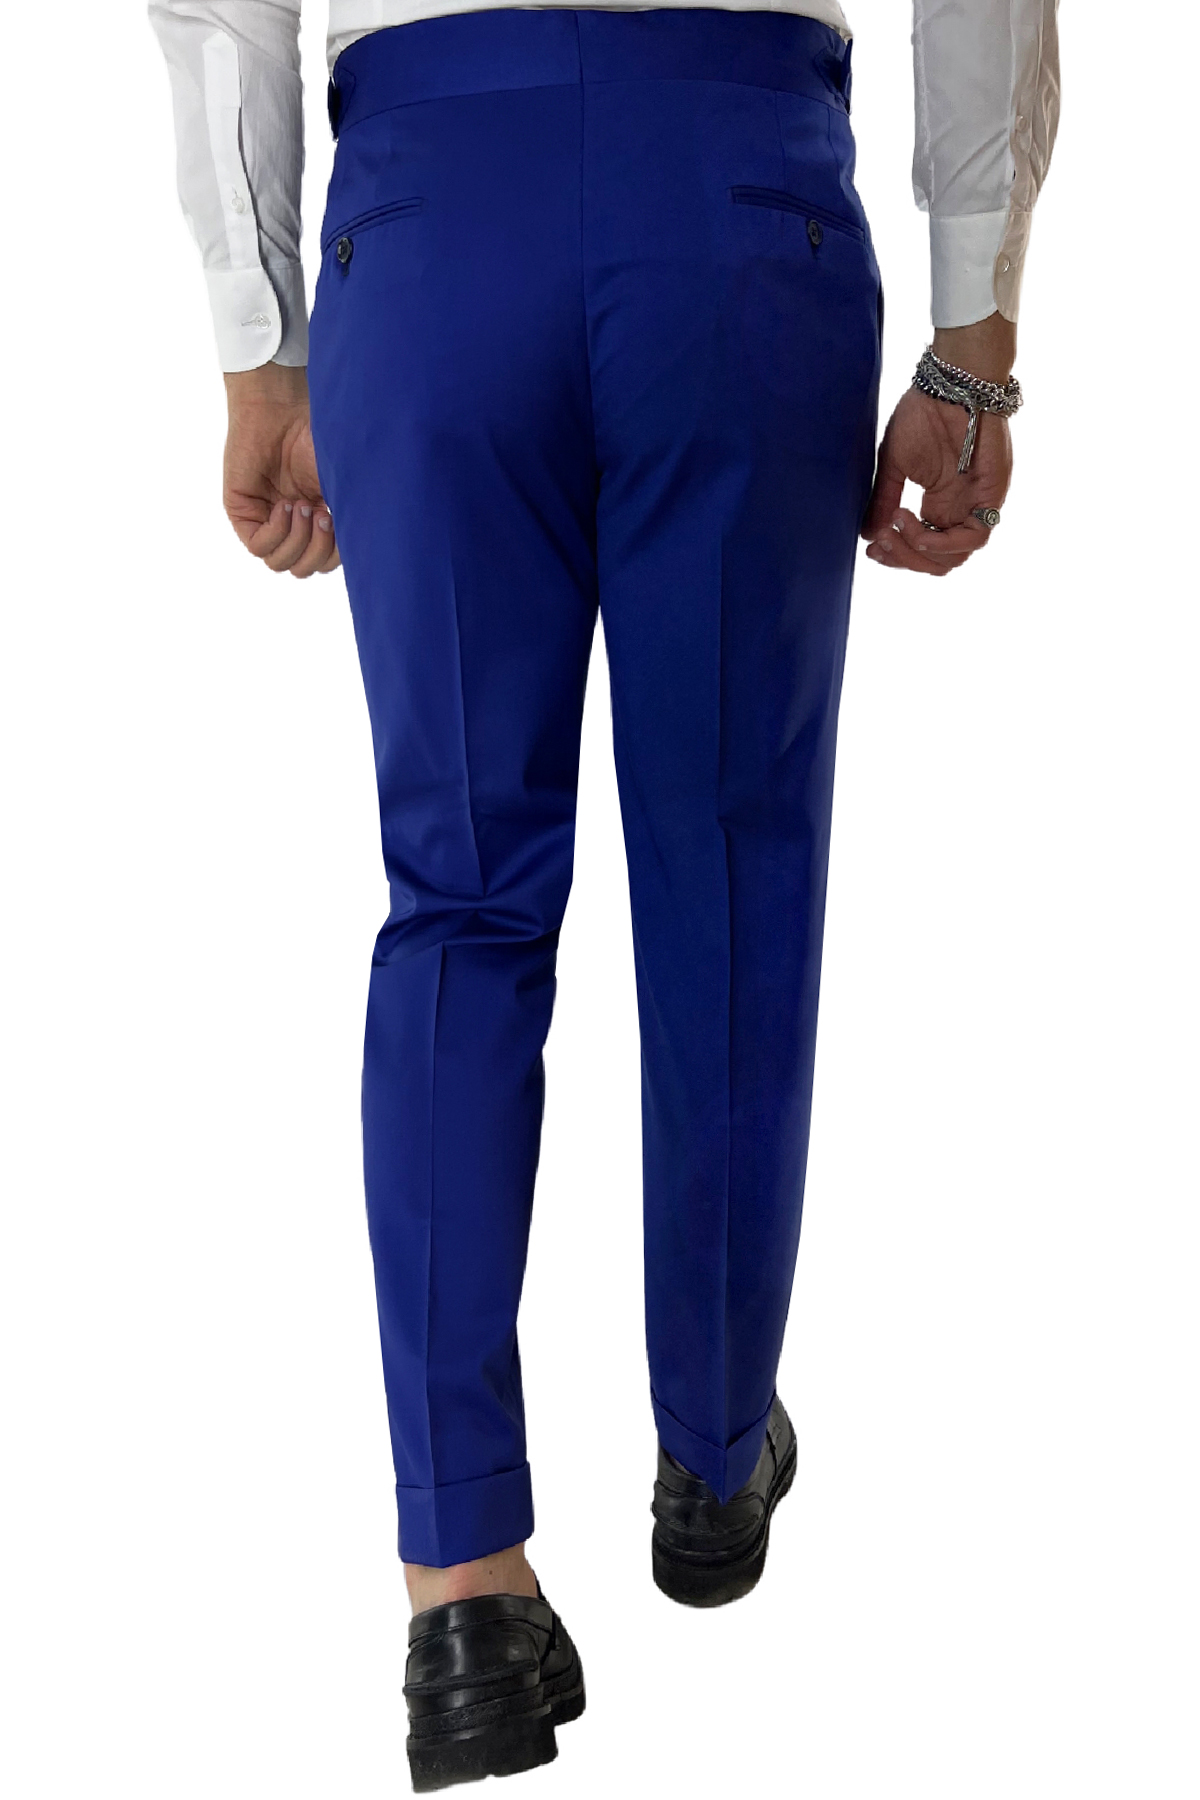 Pantalone uomo bluette vita alta tasca america in fresco lana 100% Vitale Barberis Canonico fibbie laterali e risvolto 4cm